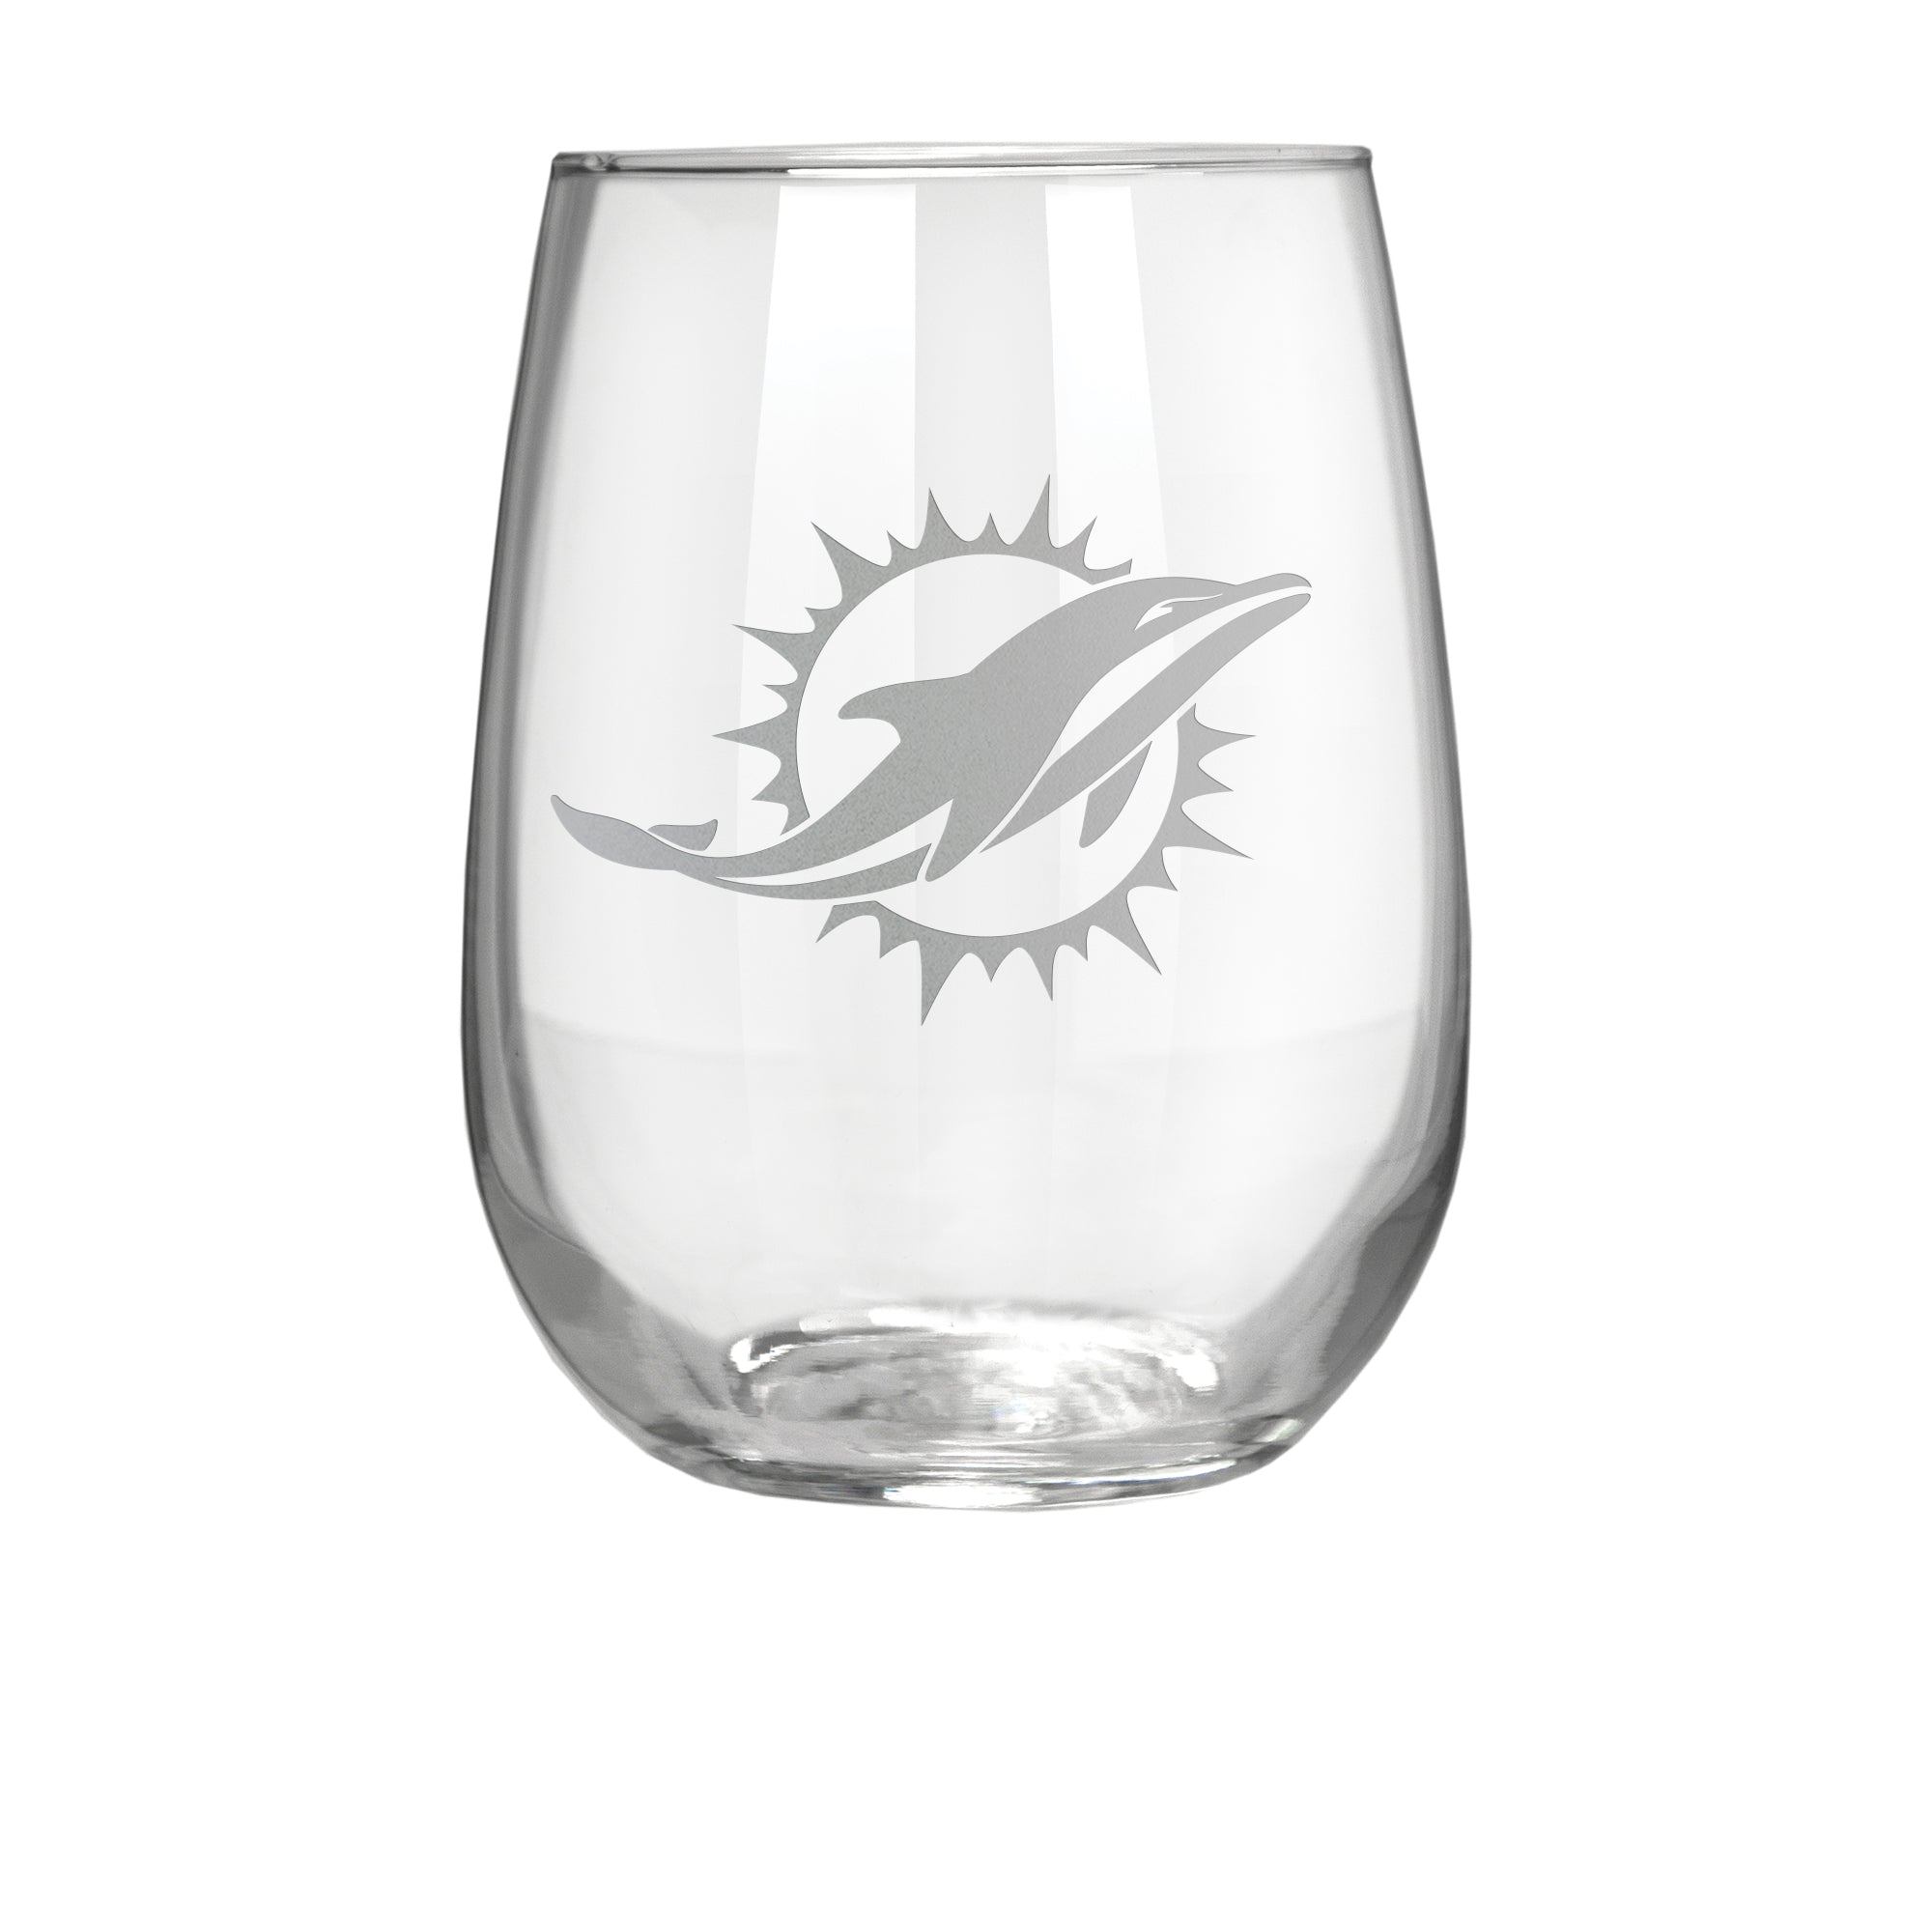 Miami Hurricanes Plastic Stem Wine Glasses Set - 16oz - 4 Pack